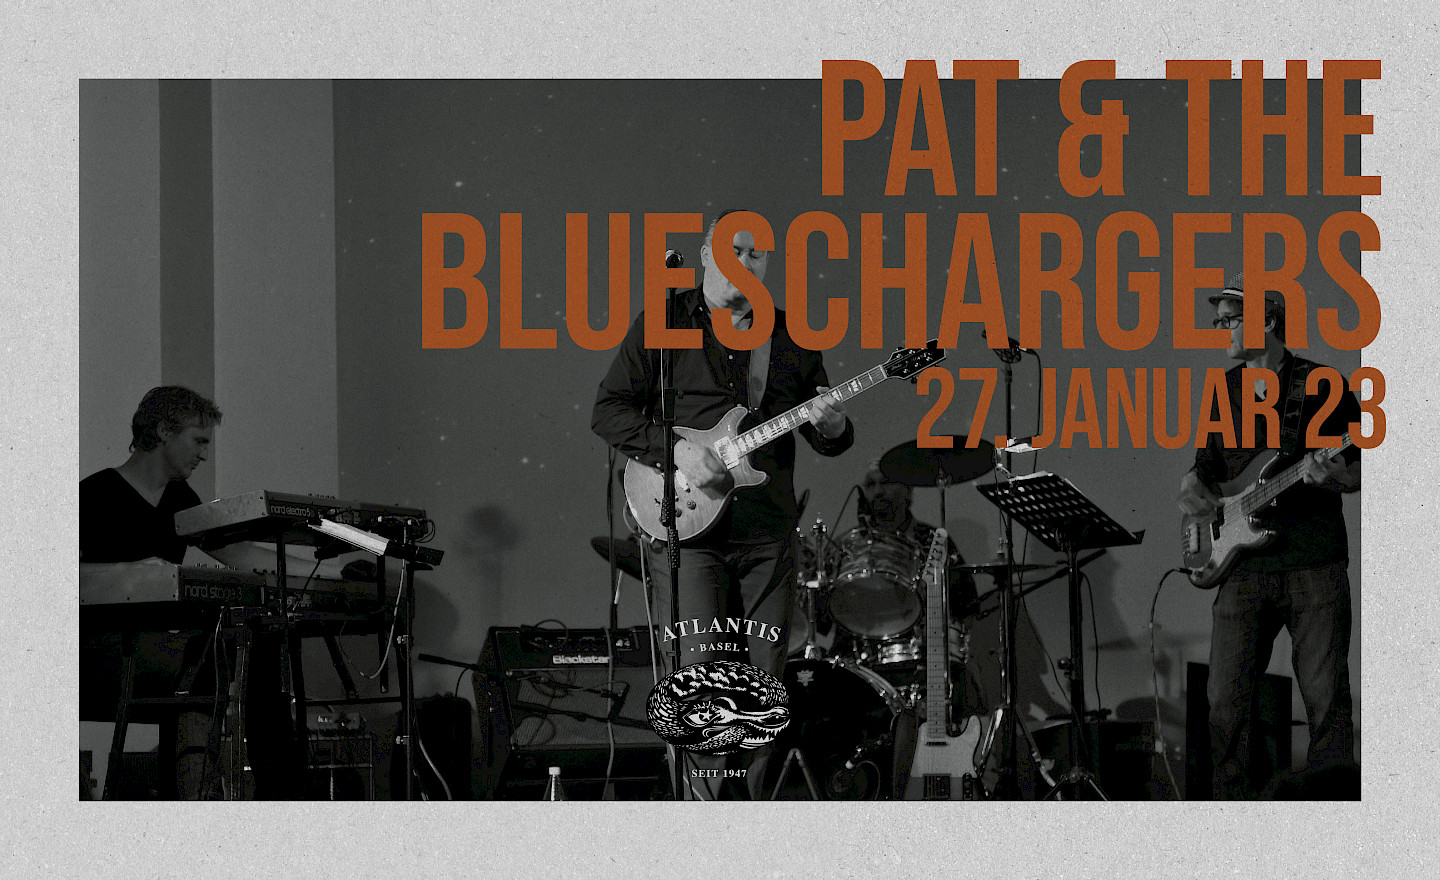 Pat & the Blueschargers